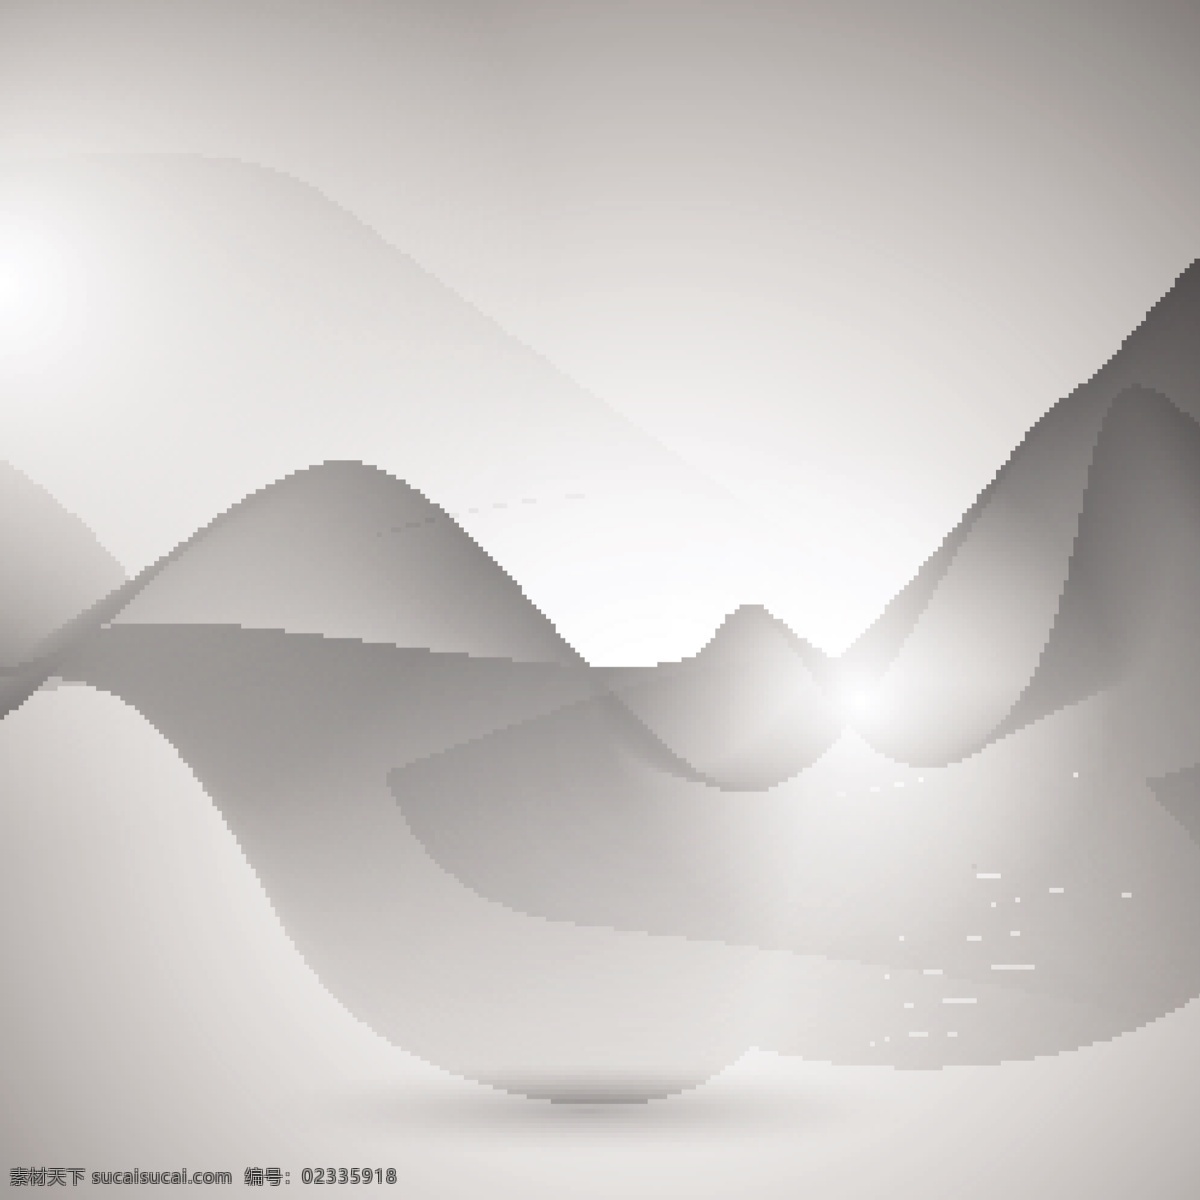 具有 浮动 形状 现代 灰色 抽象 背景 抽象背景 波浪 烟雾 抽象的形状 柔软 波浪背景 环境 波浪形